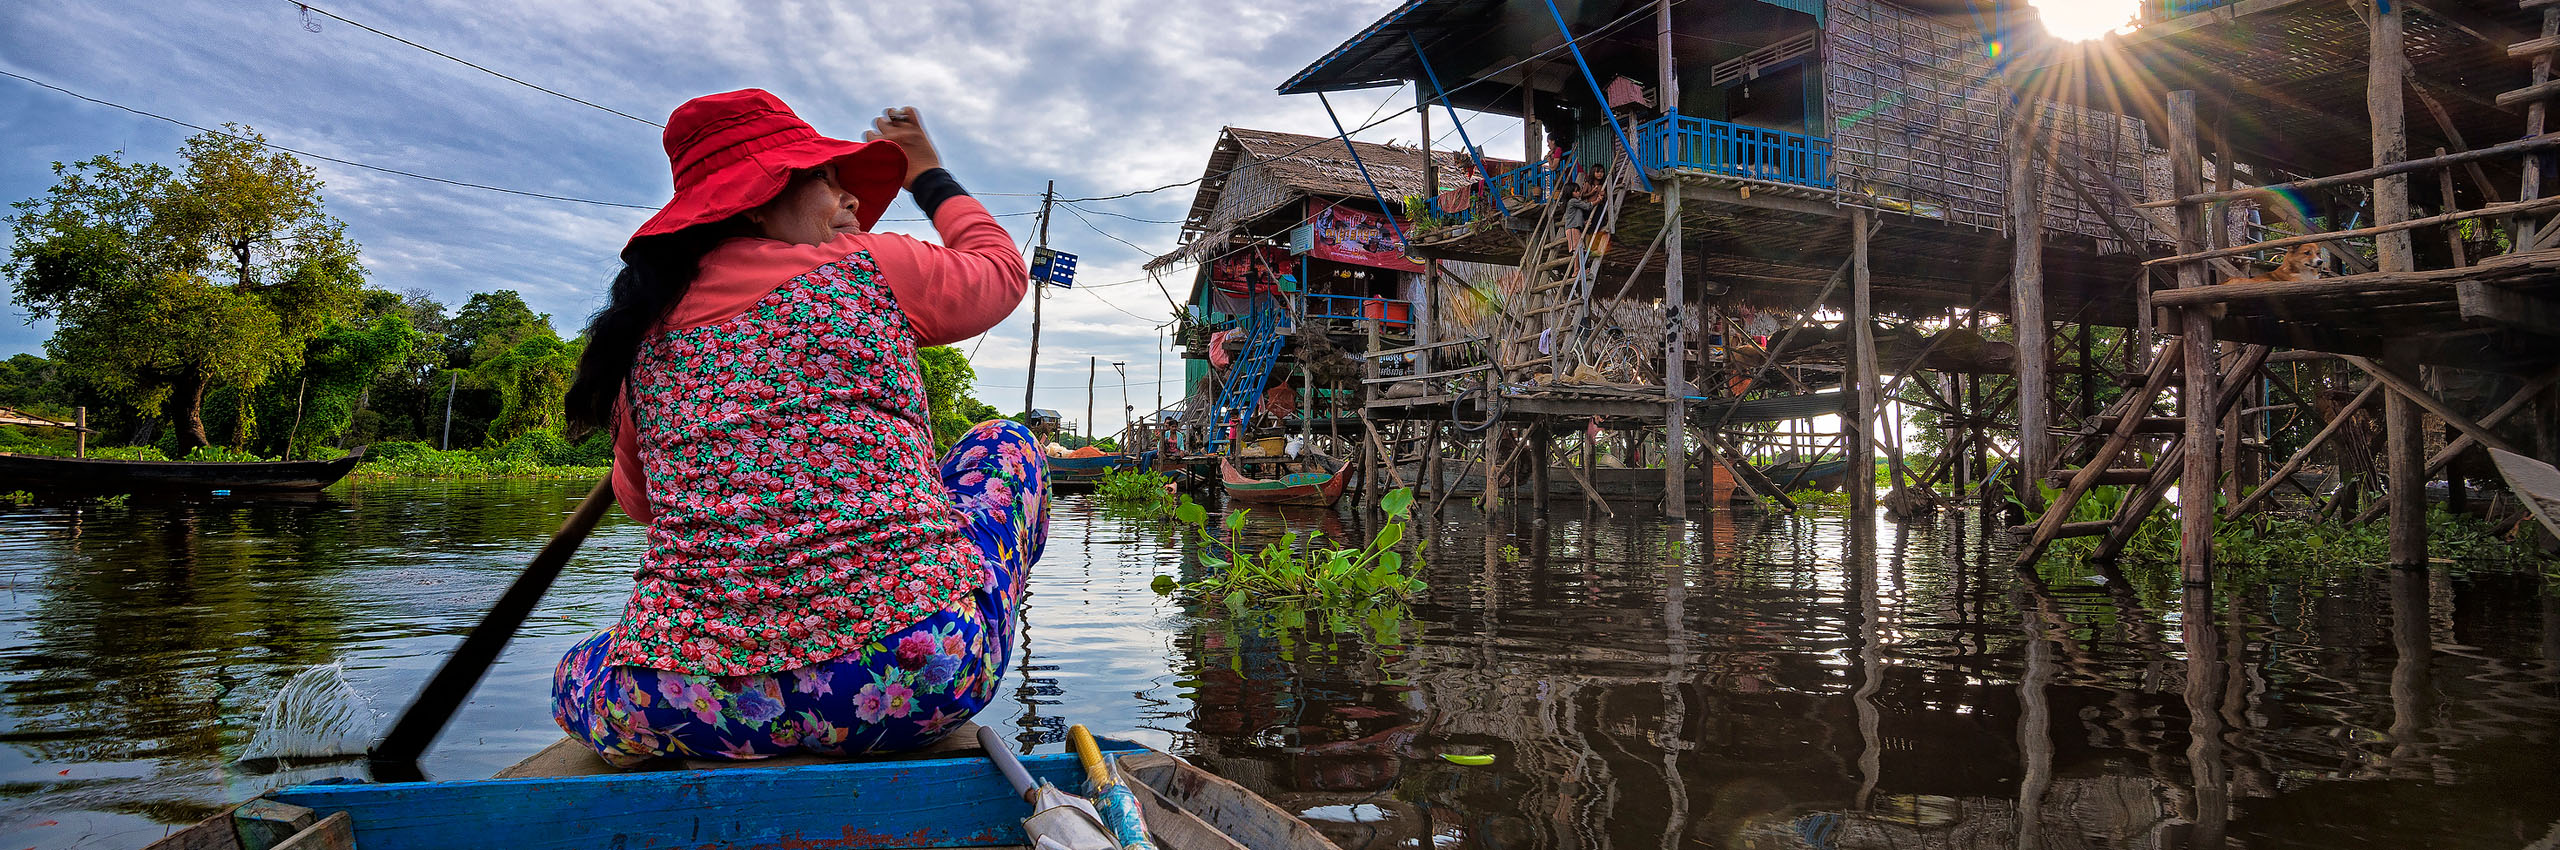 41136480 | Cambodia/Siem Reap | © Bernd Grundmann/HUBER IMAGES